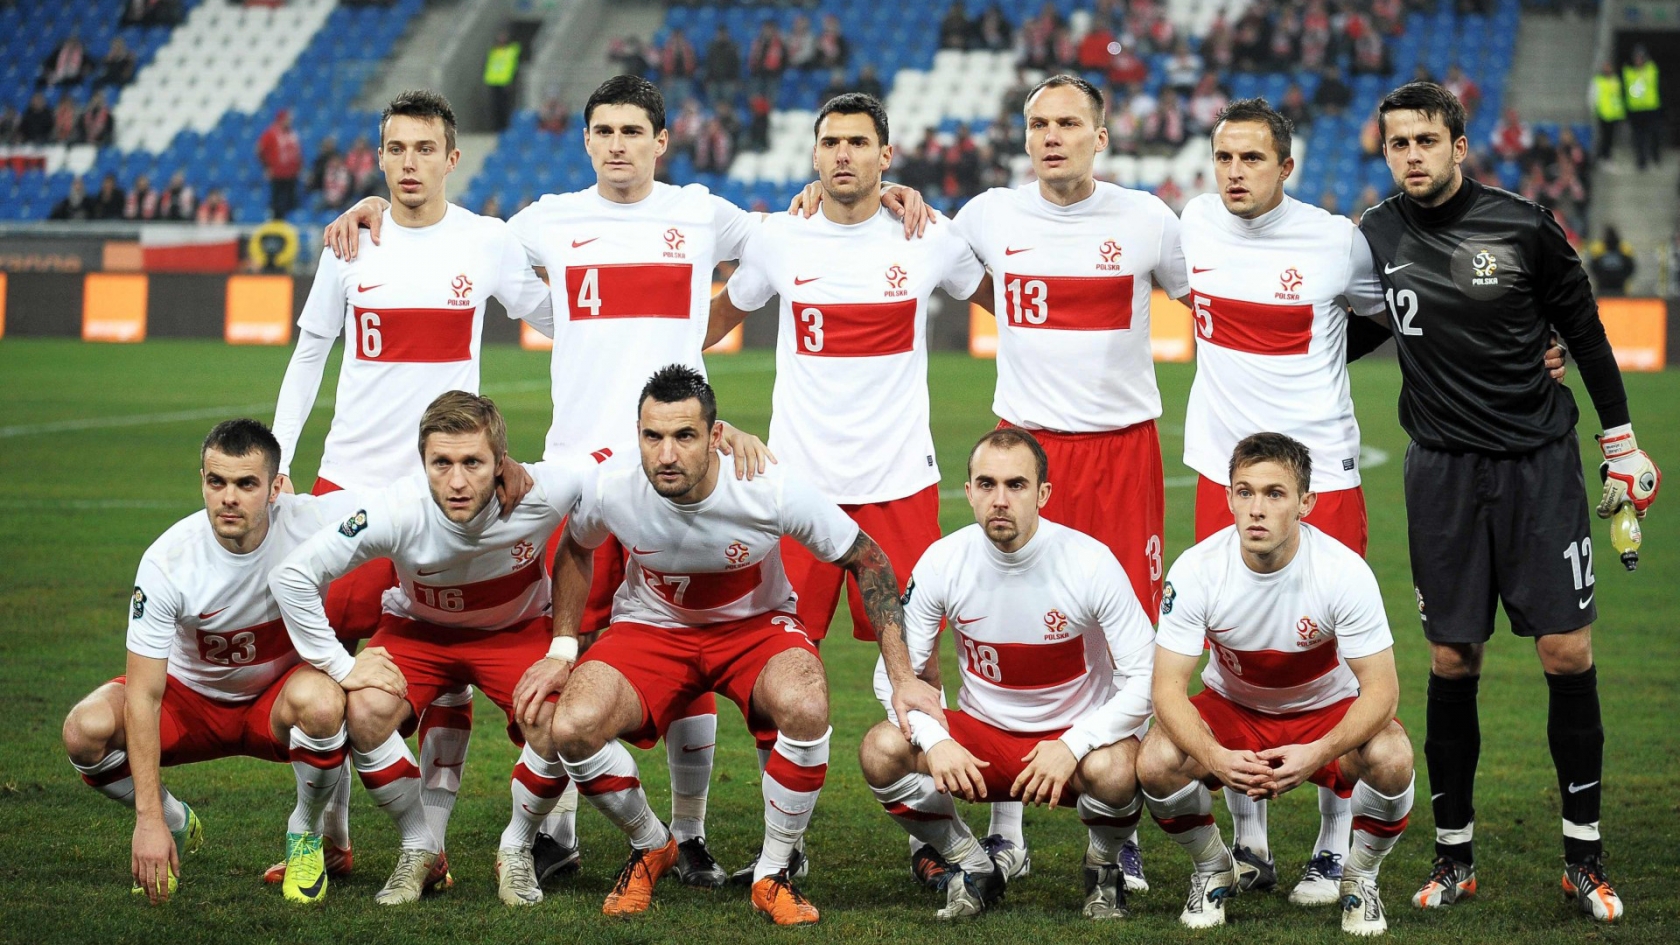 Polska National Team for 1680 x 945 HDTV resolution